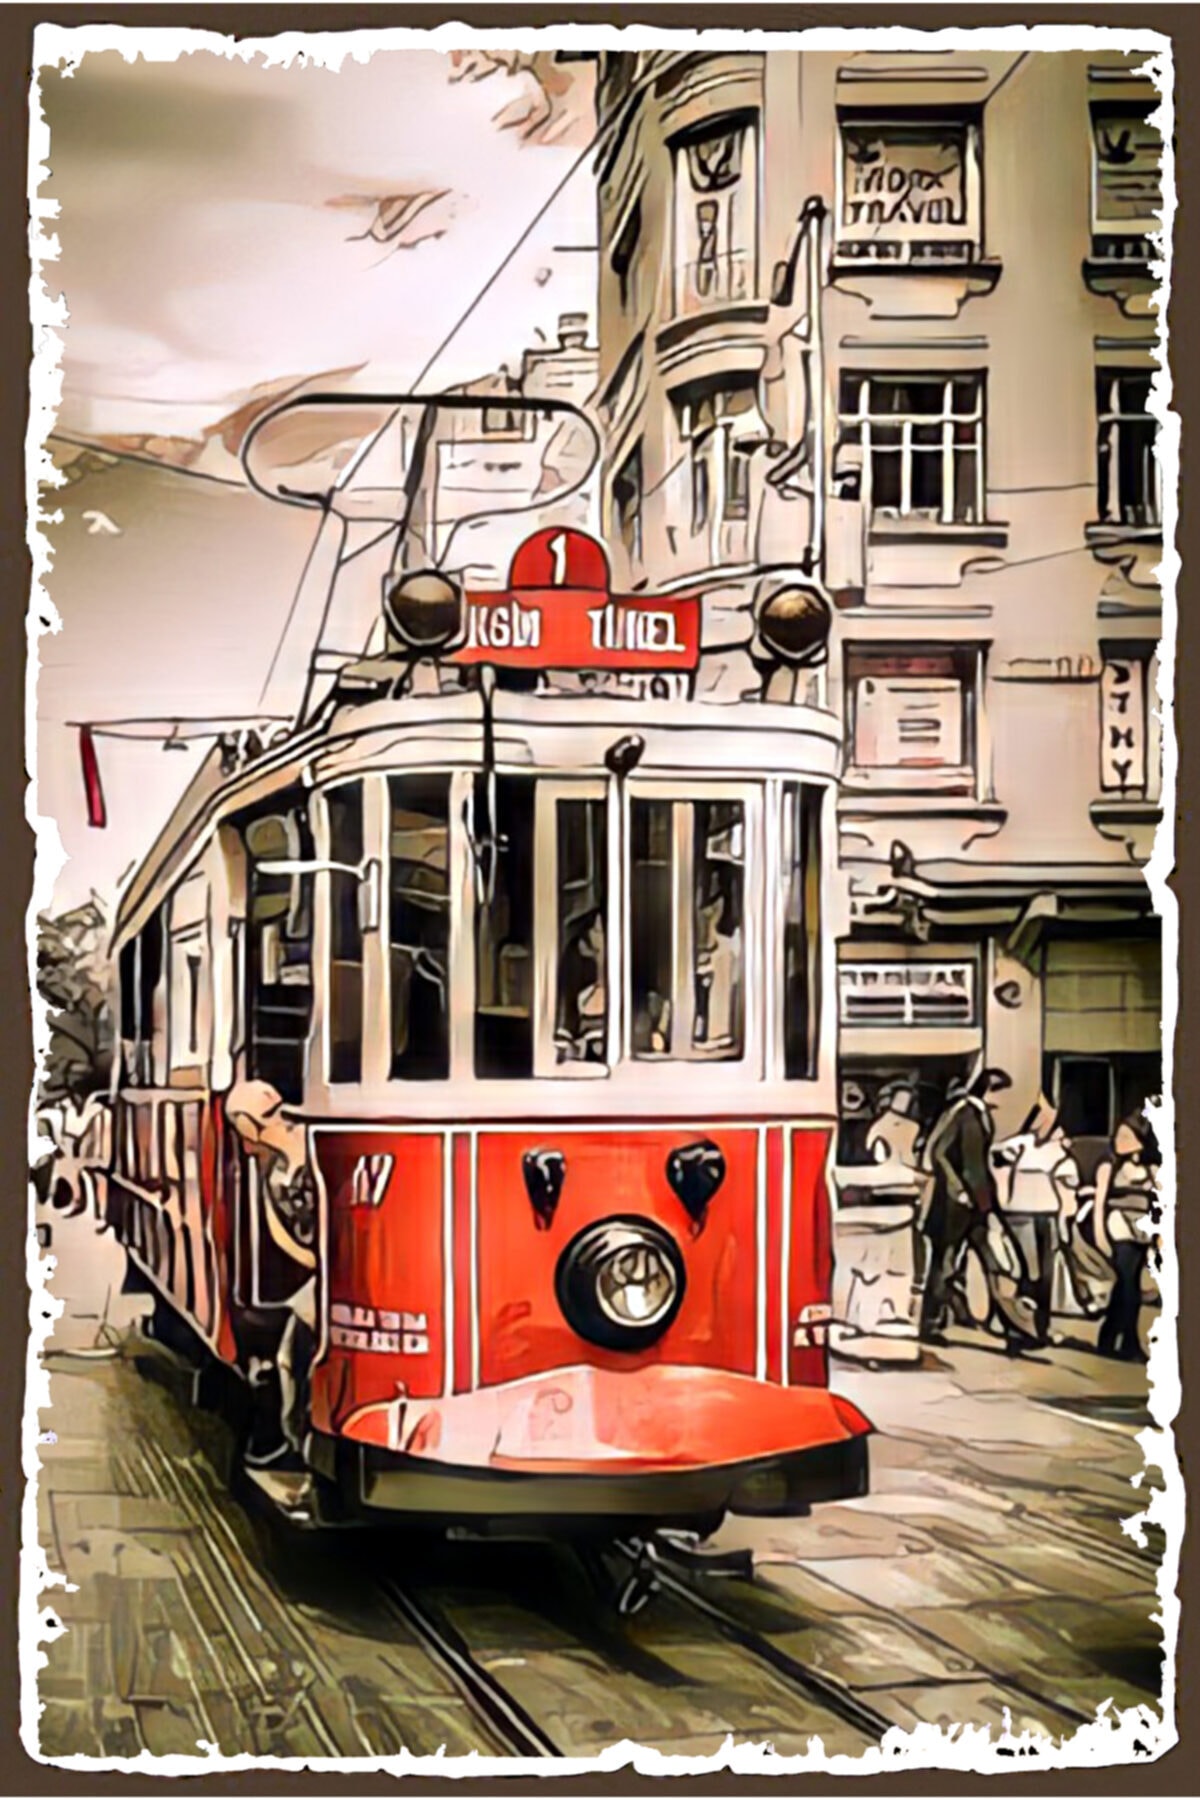 hediyeniburadabul Taksim Tünel Tramvayı Retro Poster Özel İstanbul Koleksiyonu -hbb